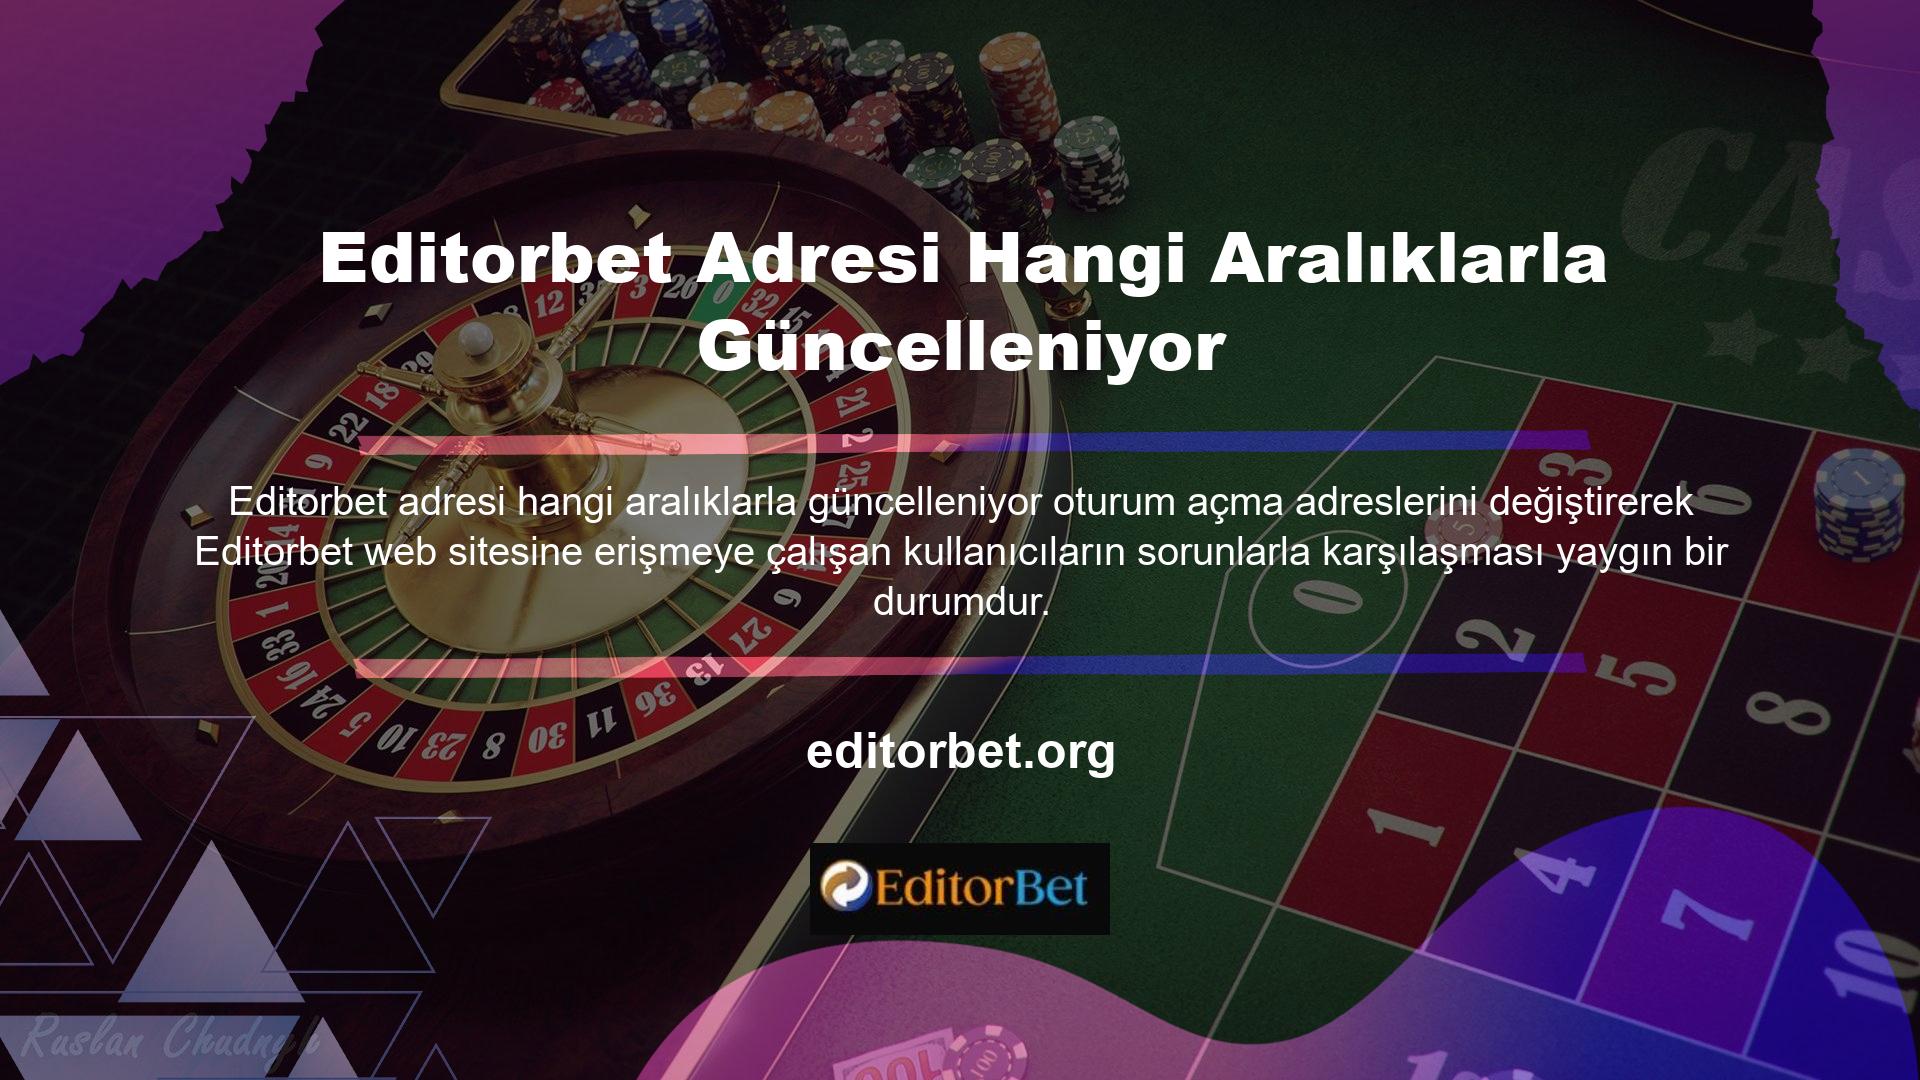 Türkiye'nin casino hizmetlerine getirdiği yasak bu değişikliğe yol açtı